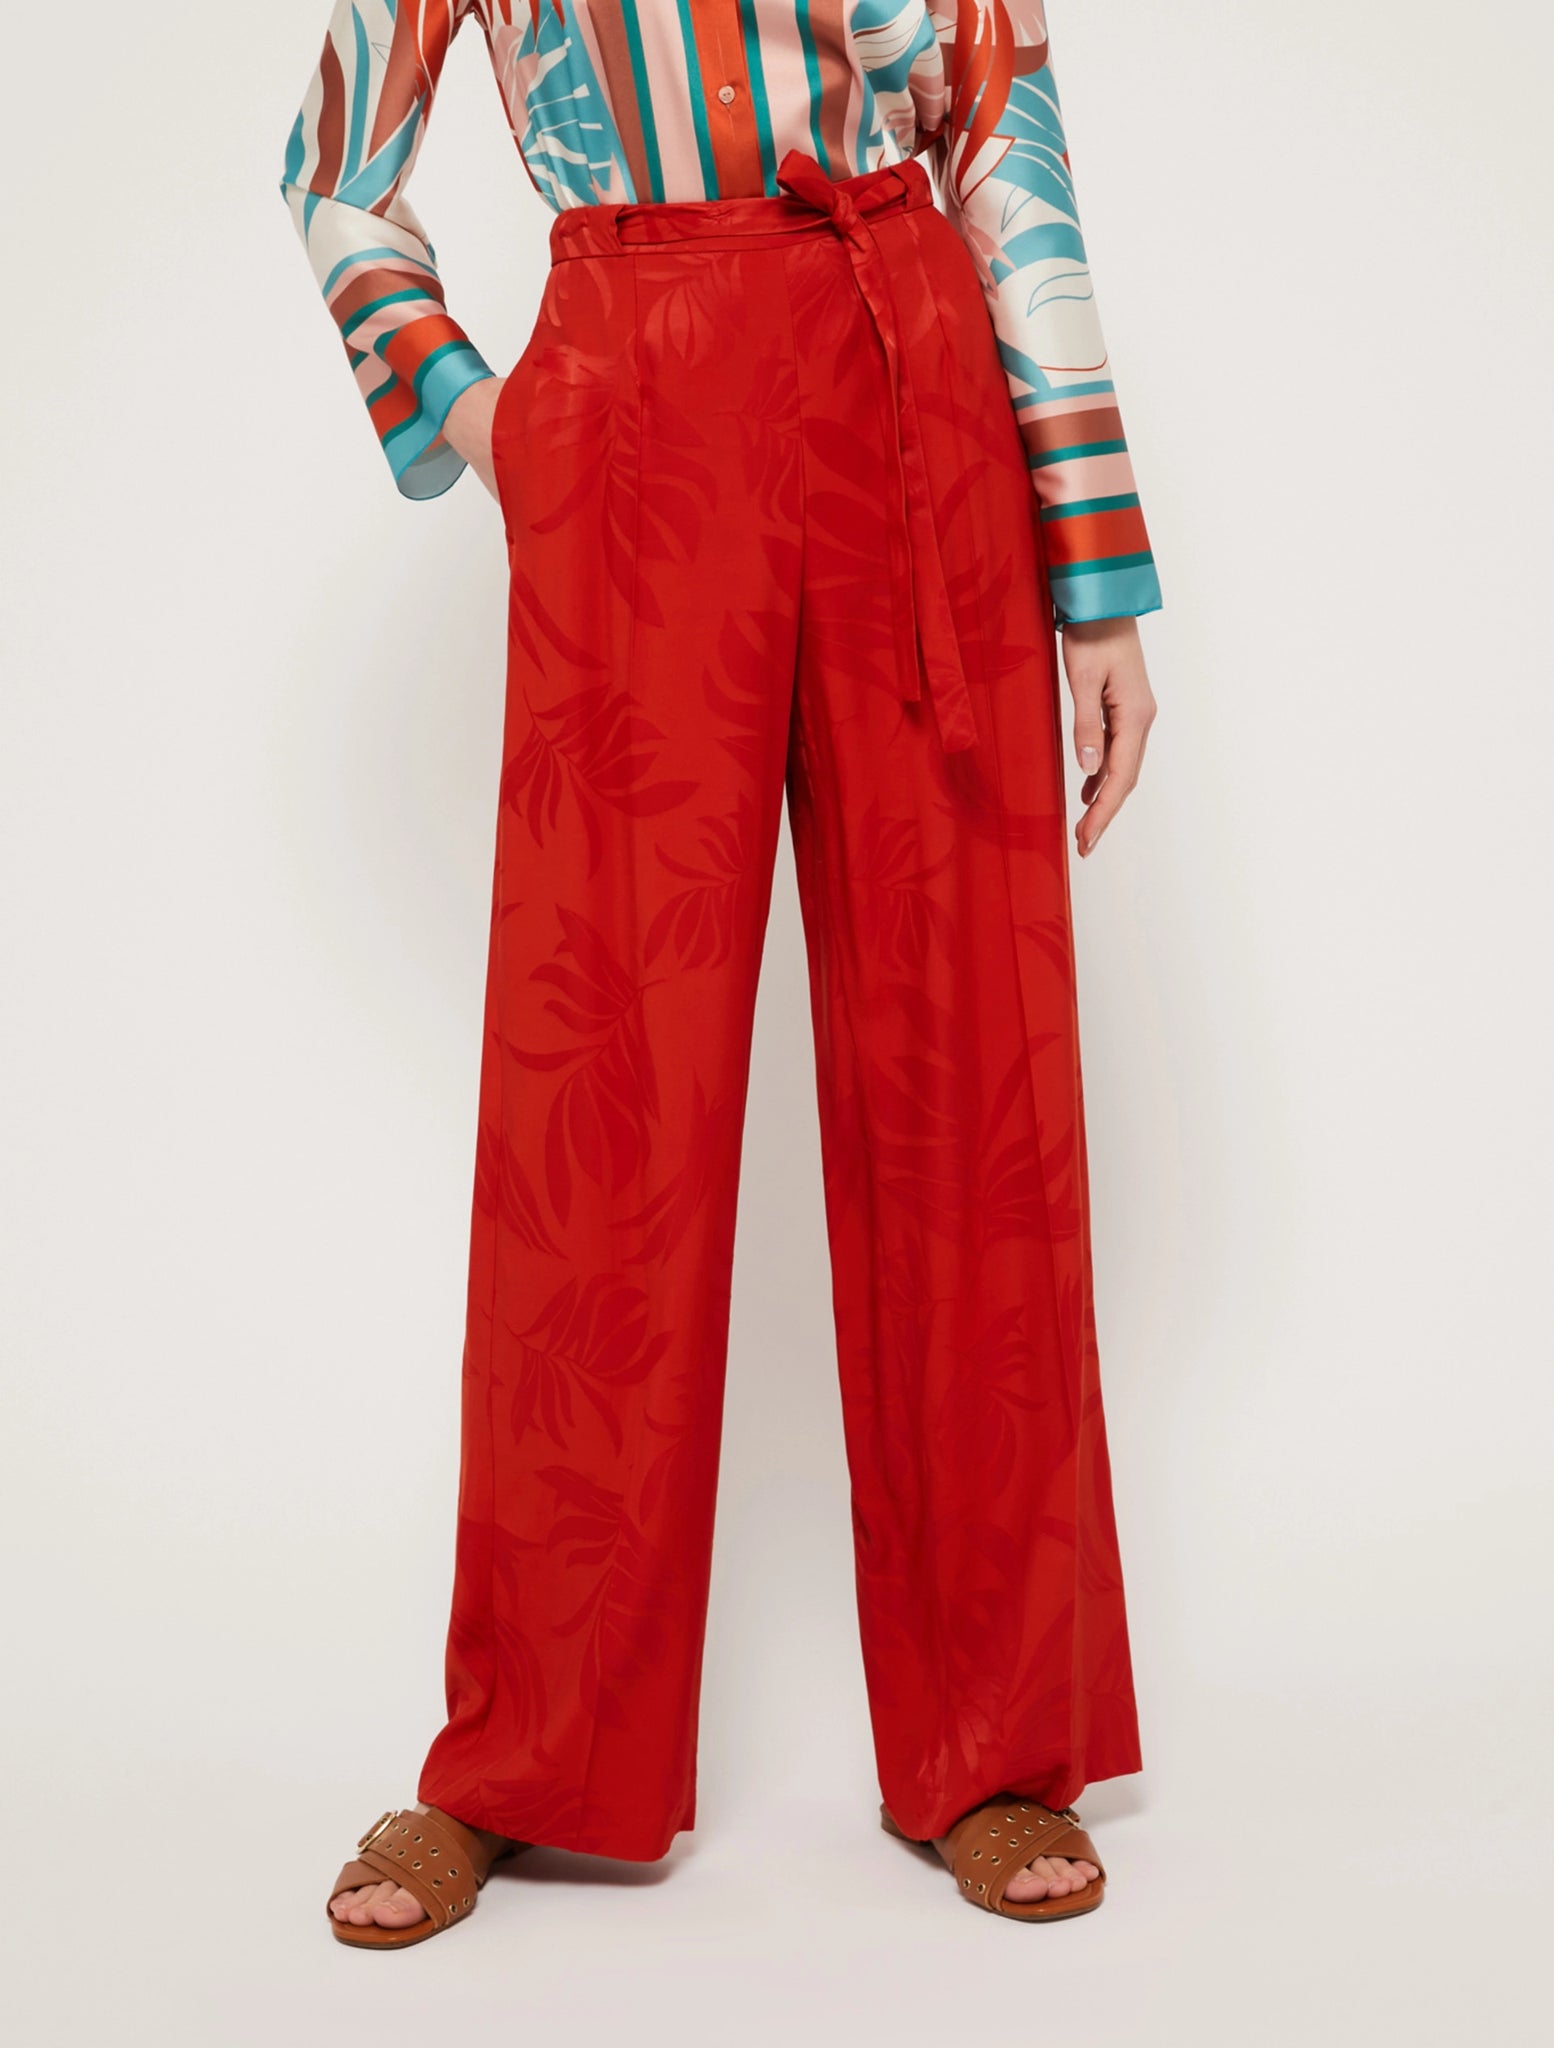 Pantalone in Viscosa Jacquard Pennyblack / Rosso - Ideal Moda